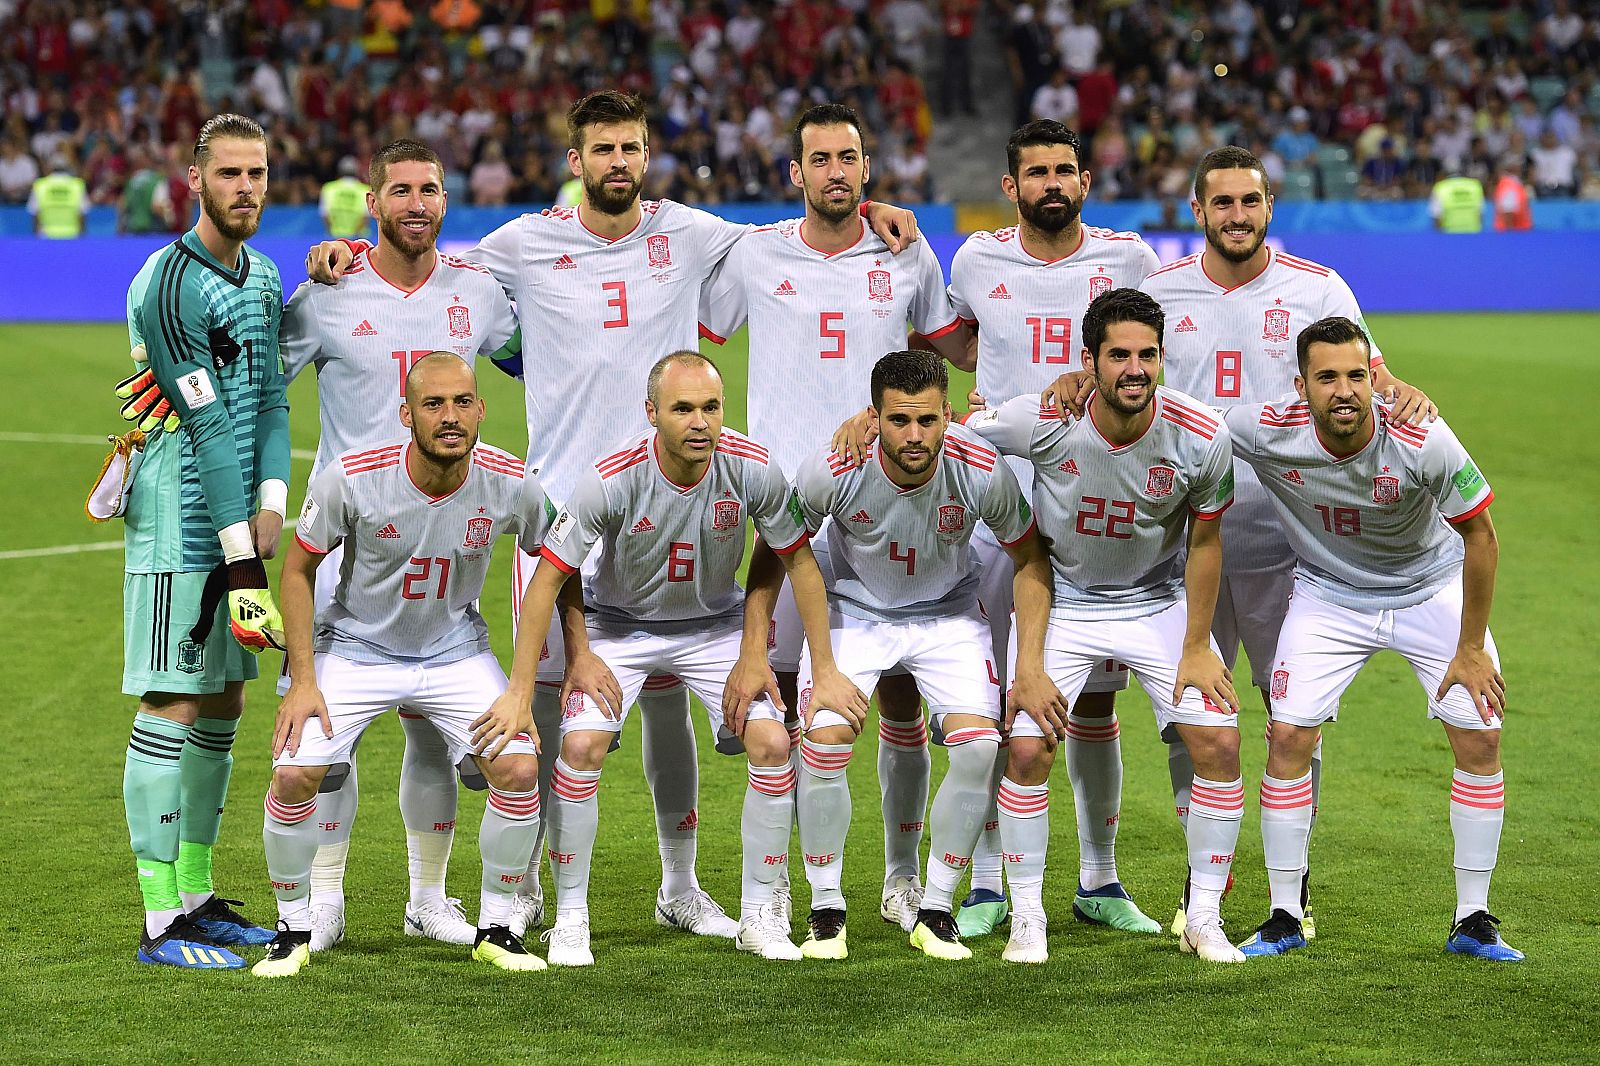 La selección española de fútbol en el posado antes del choque ante Portugal.